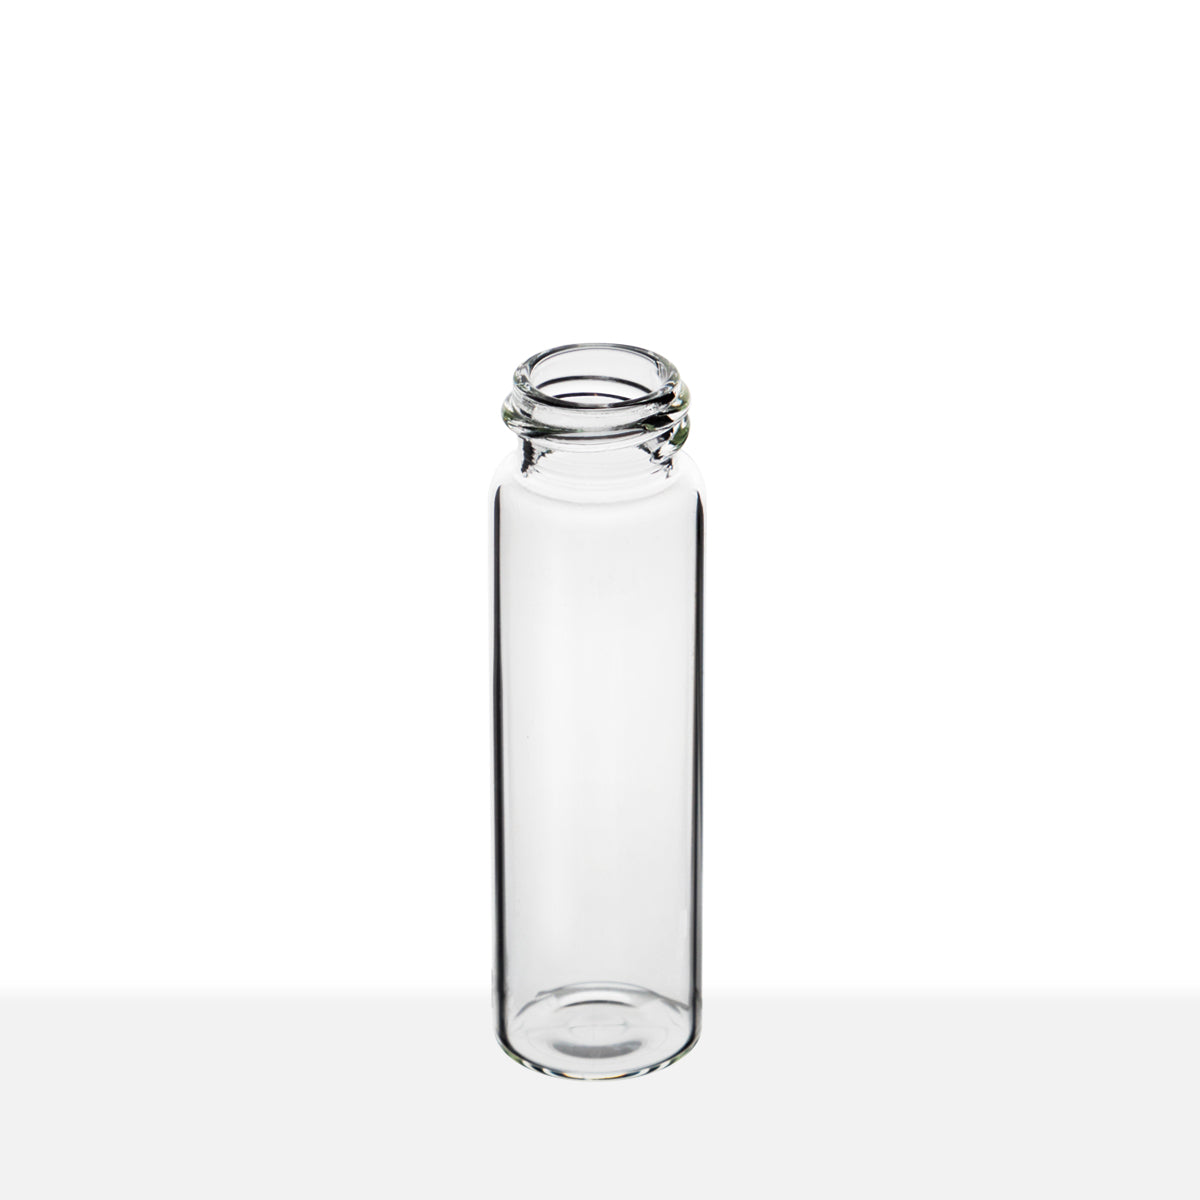 SCREW THREAD GLASS VIALS - CLEAR Item #:VC182170